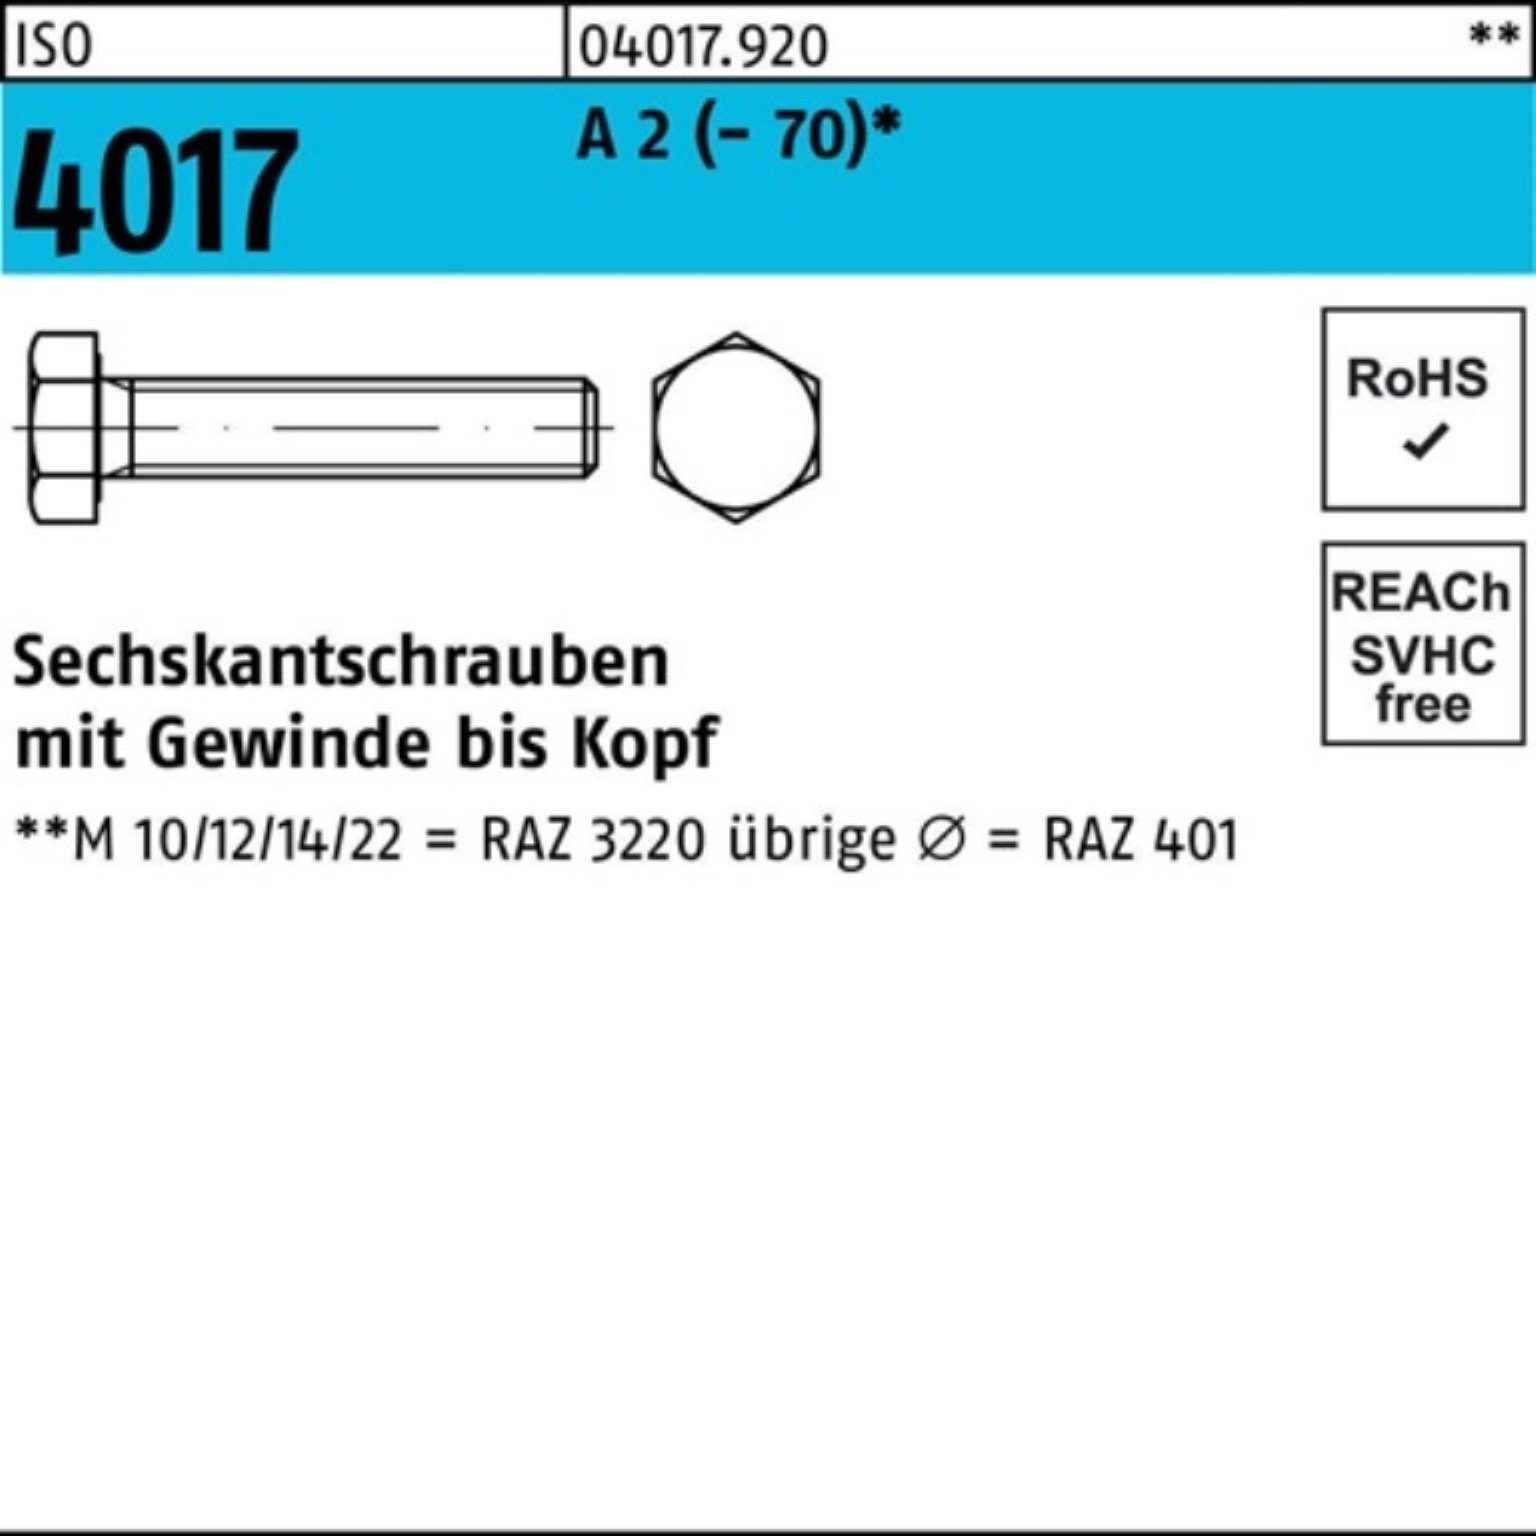 Bufab Sechskantschraube 100er Pack Sechskantschraube ISO 4017 VG M12x 120 A 2 (70) 25 Stück